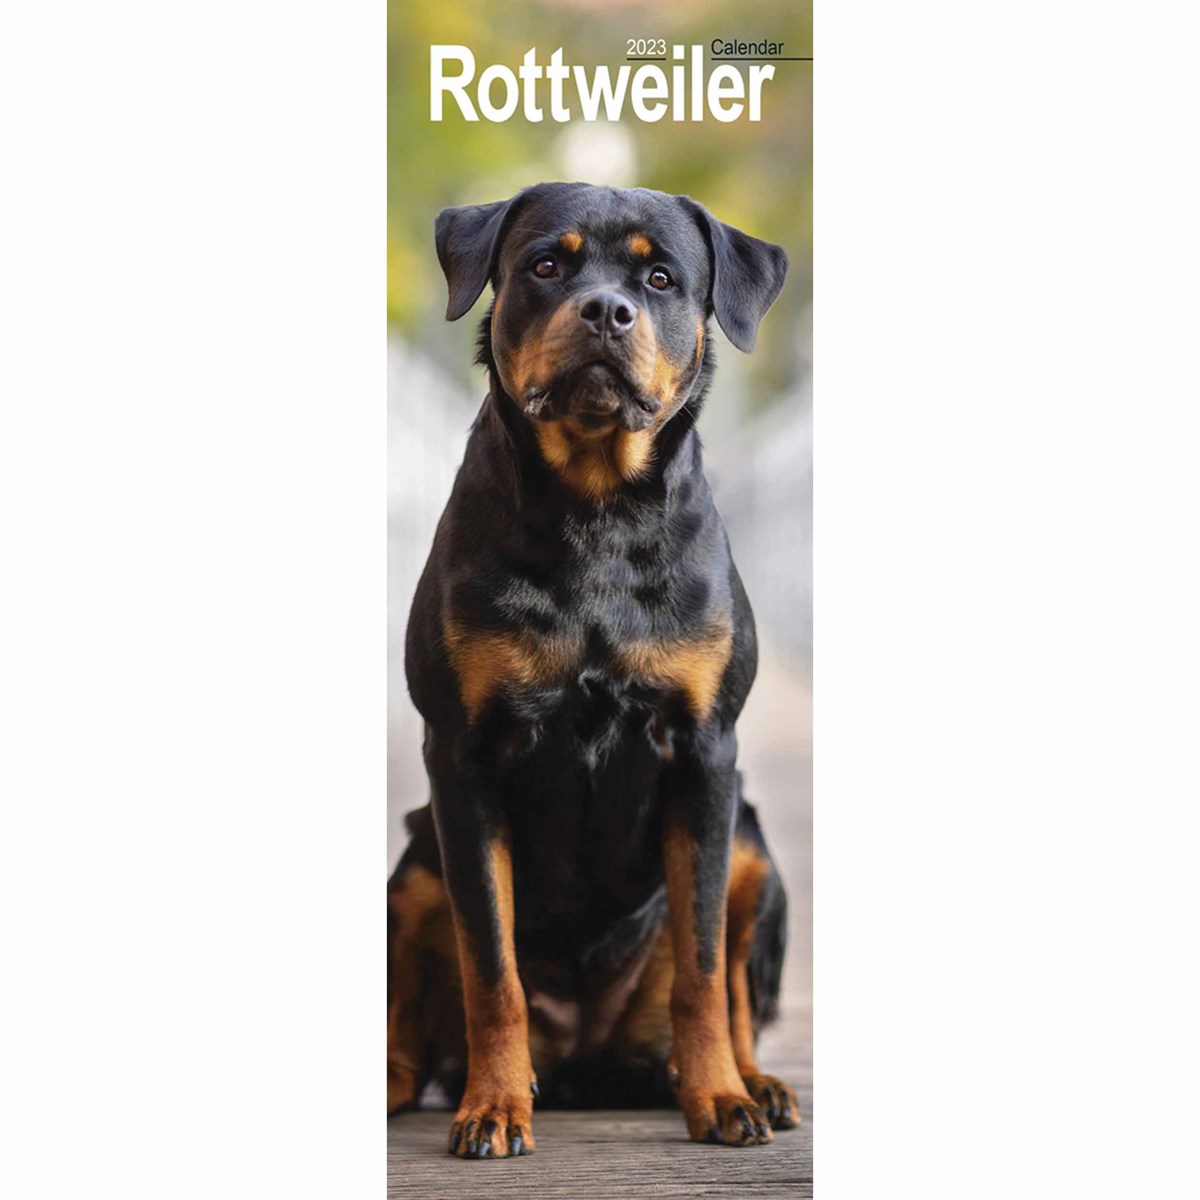 Rottweiler Slim 2023 Calendars